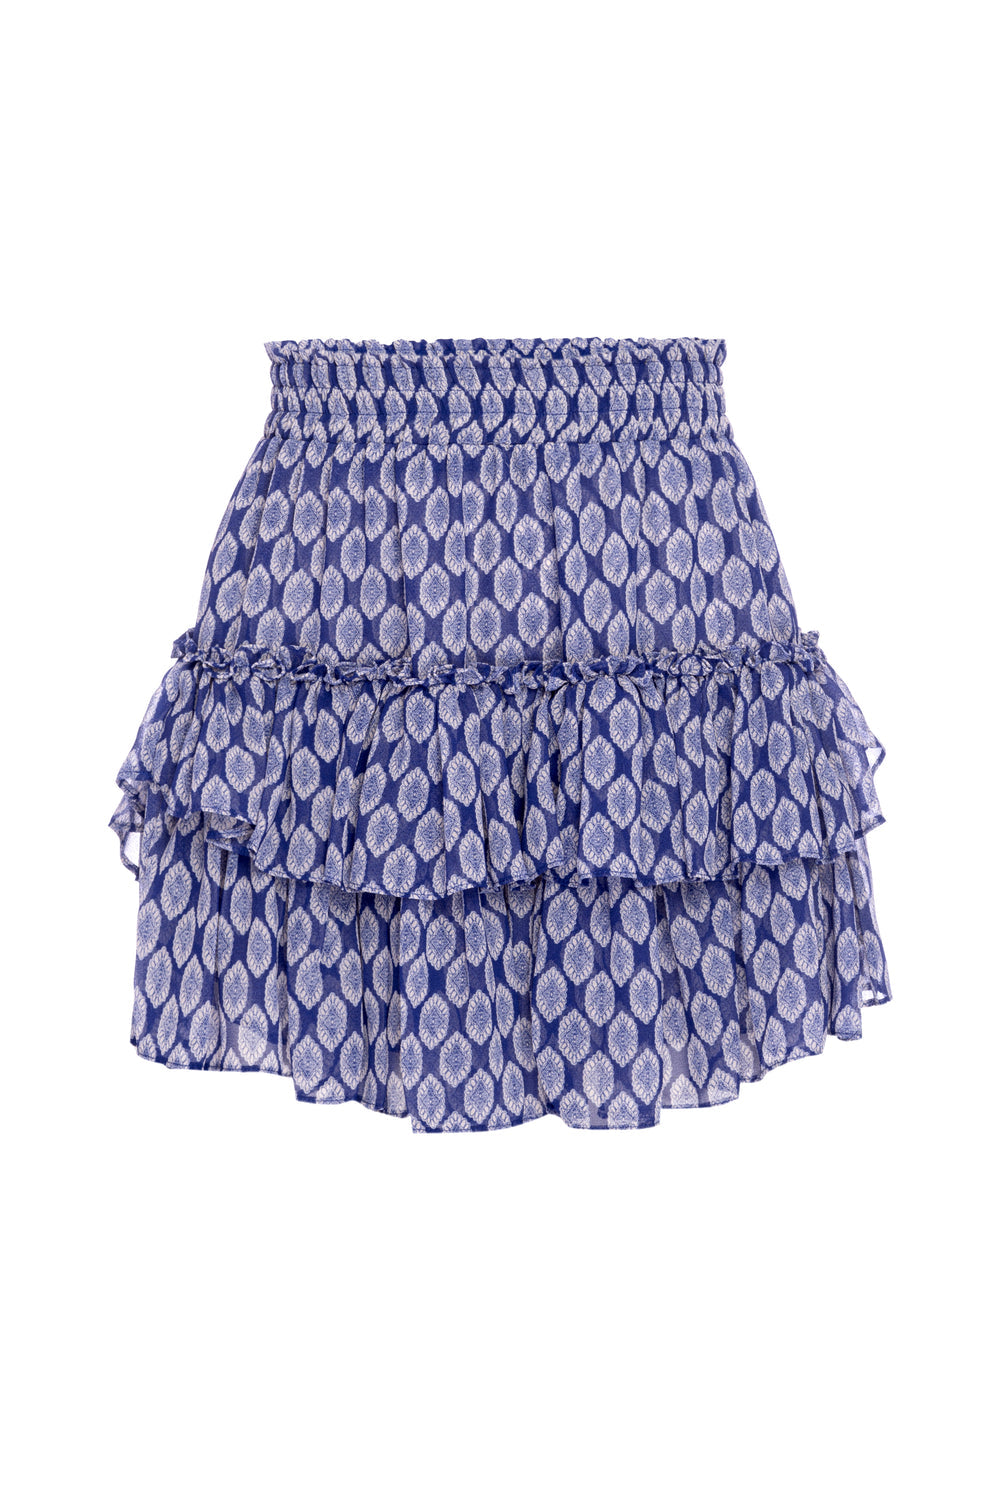 Misa - Nahla Skirt in Majorelle Lapis Tile